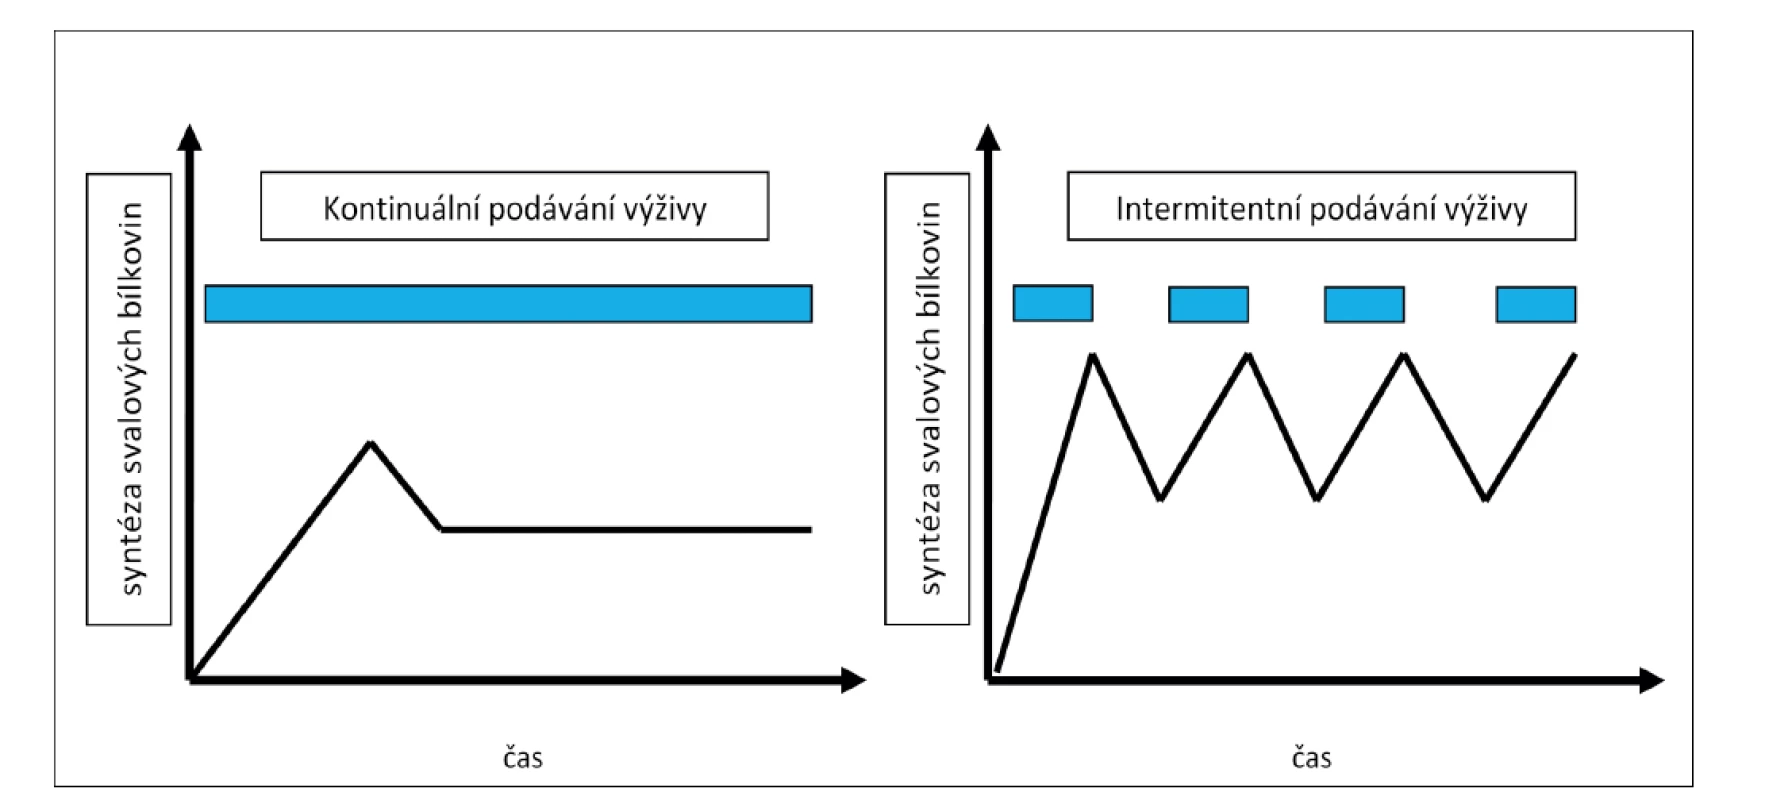 Grafické znázornění „muscle full“ efektu při kontinuálním a intermitentním podávání výživy<br>
Fig. 2: Graphic visualization of the “muscle full“ effect with continuous and intermittent feeding